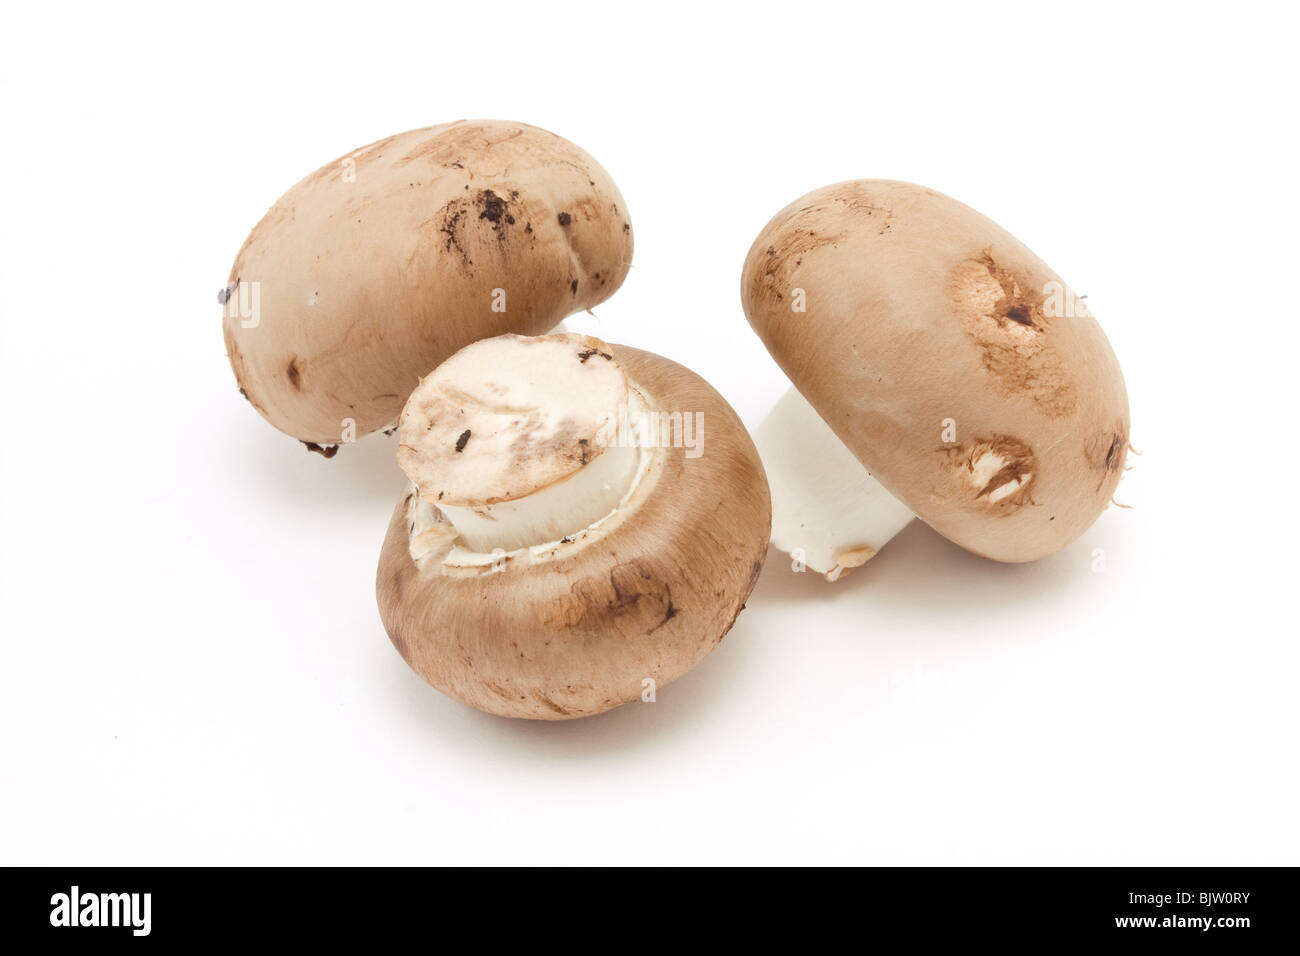 Les champignons de la châtaigne vue faible contre isolé sur fond blanc. Banque D'Images